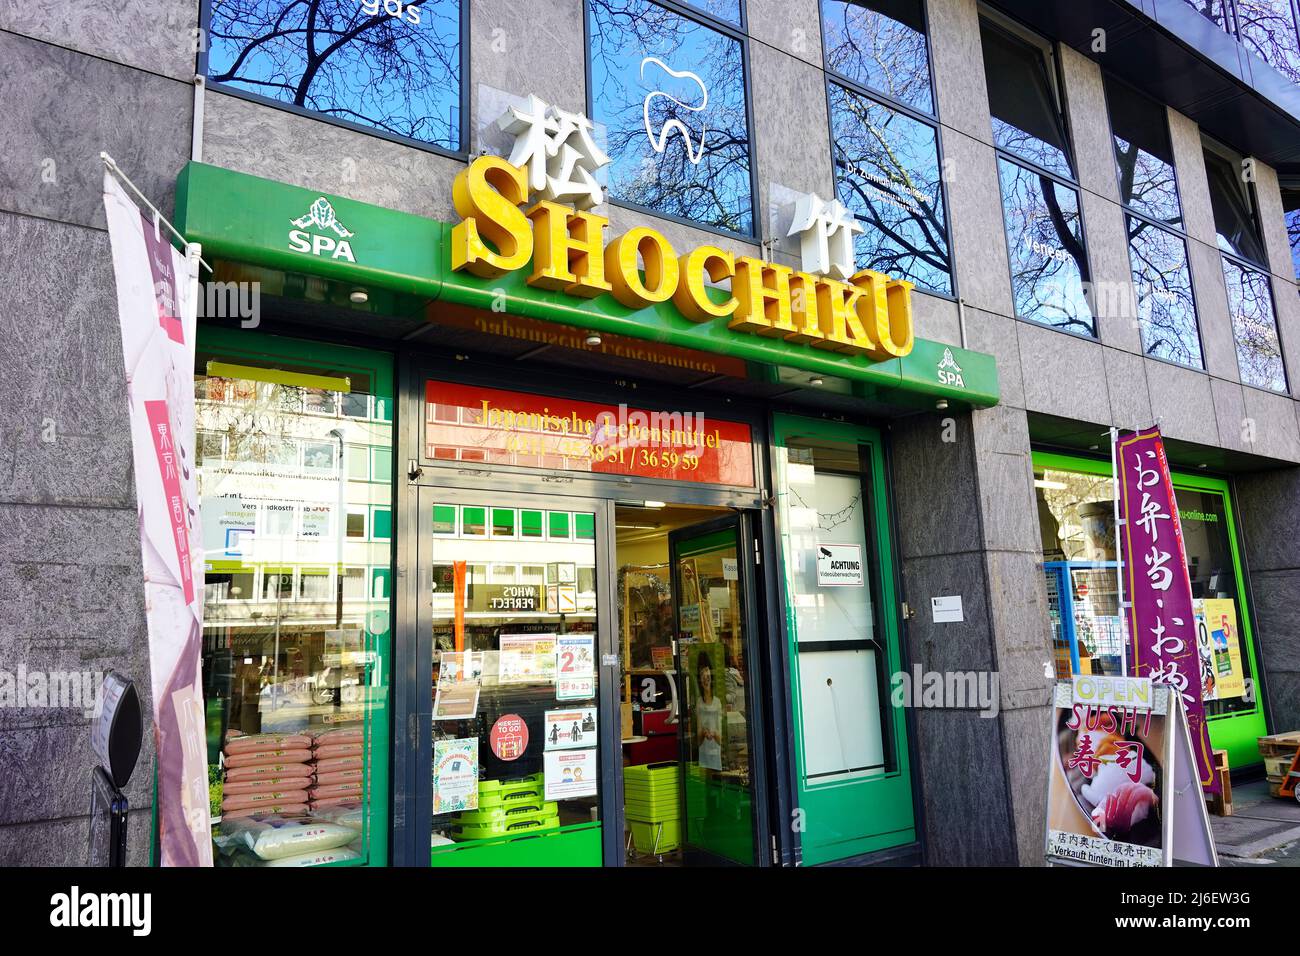 Das Lebensmittelgeschäft „Shochiku“ im beliebten japanischen Viertel in der Immermannstraße in Düsseldorf. Stockfoto